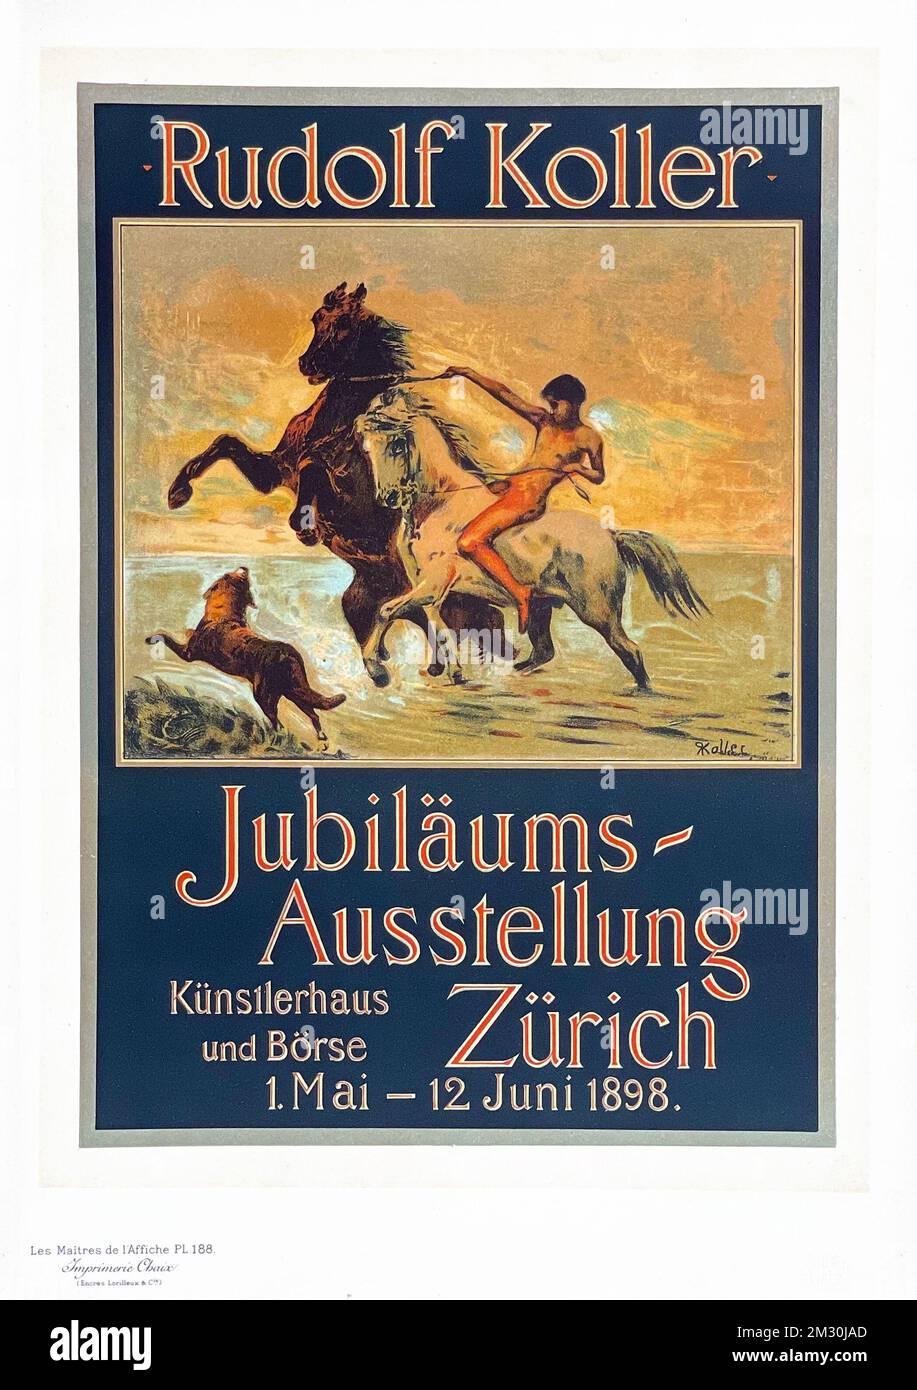 Vintage poster - Maitres Affiches by Koller - Jubilaums Ausstellung Zürich, Künstlerhaus und Börse. 1898. Plate 188 Stock Photo